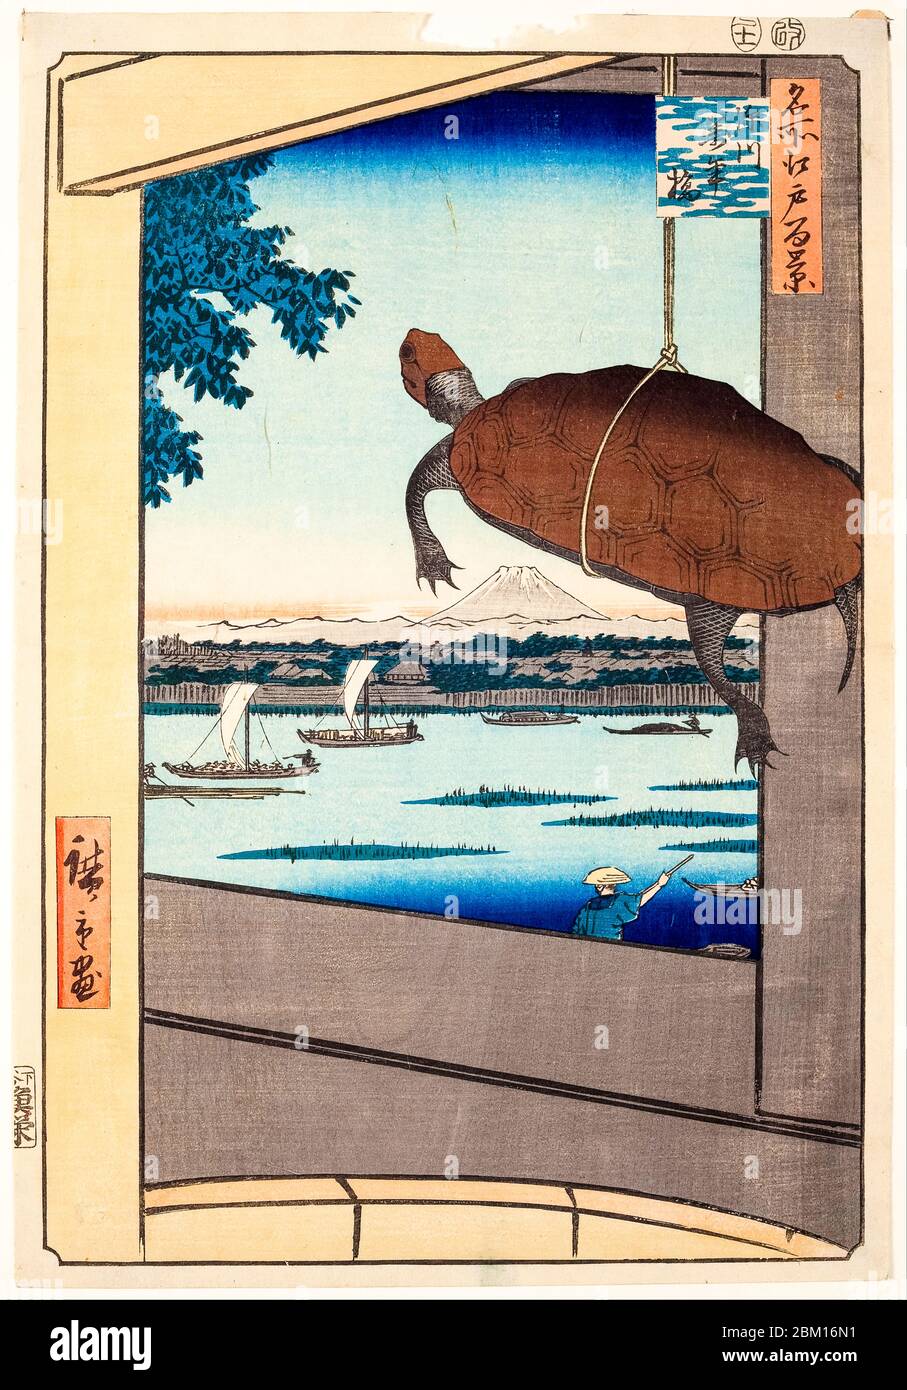 Utagawa Hiroshige, pont Mannen, Fukagawa, de la série une centaine de vues célèbres d'Edo, impression de blocs de bois, 1857 Banque D'Images